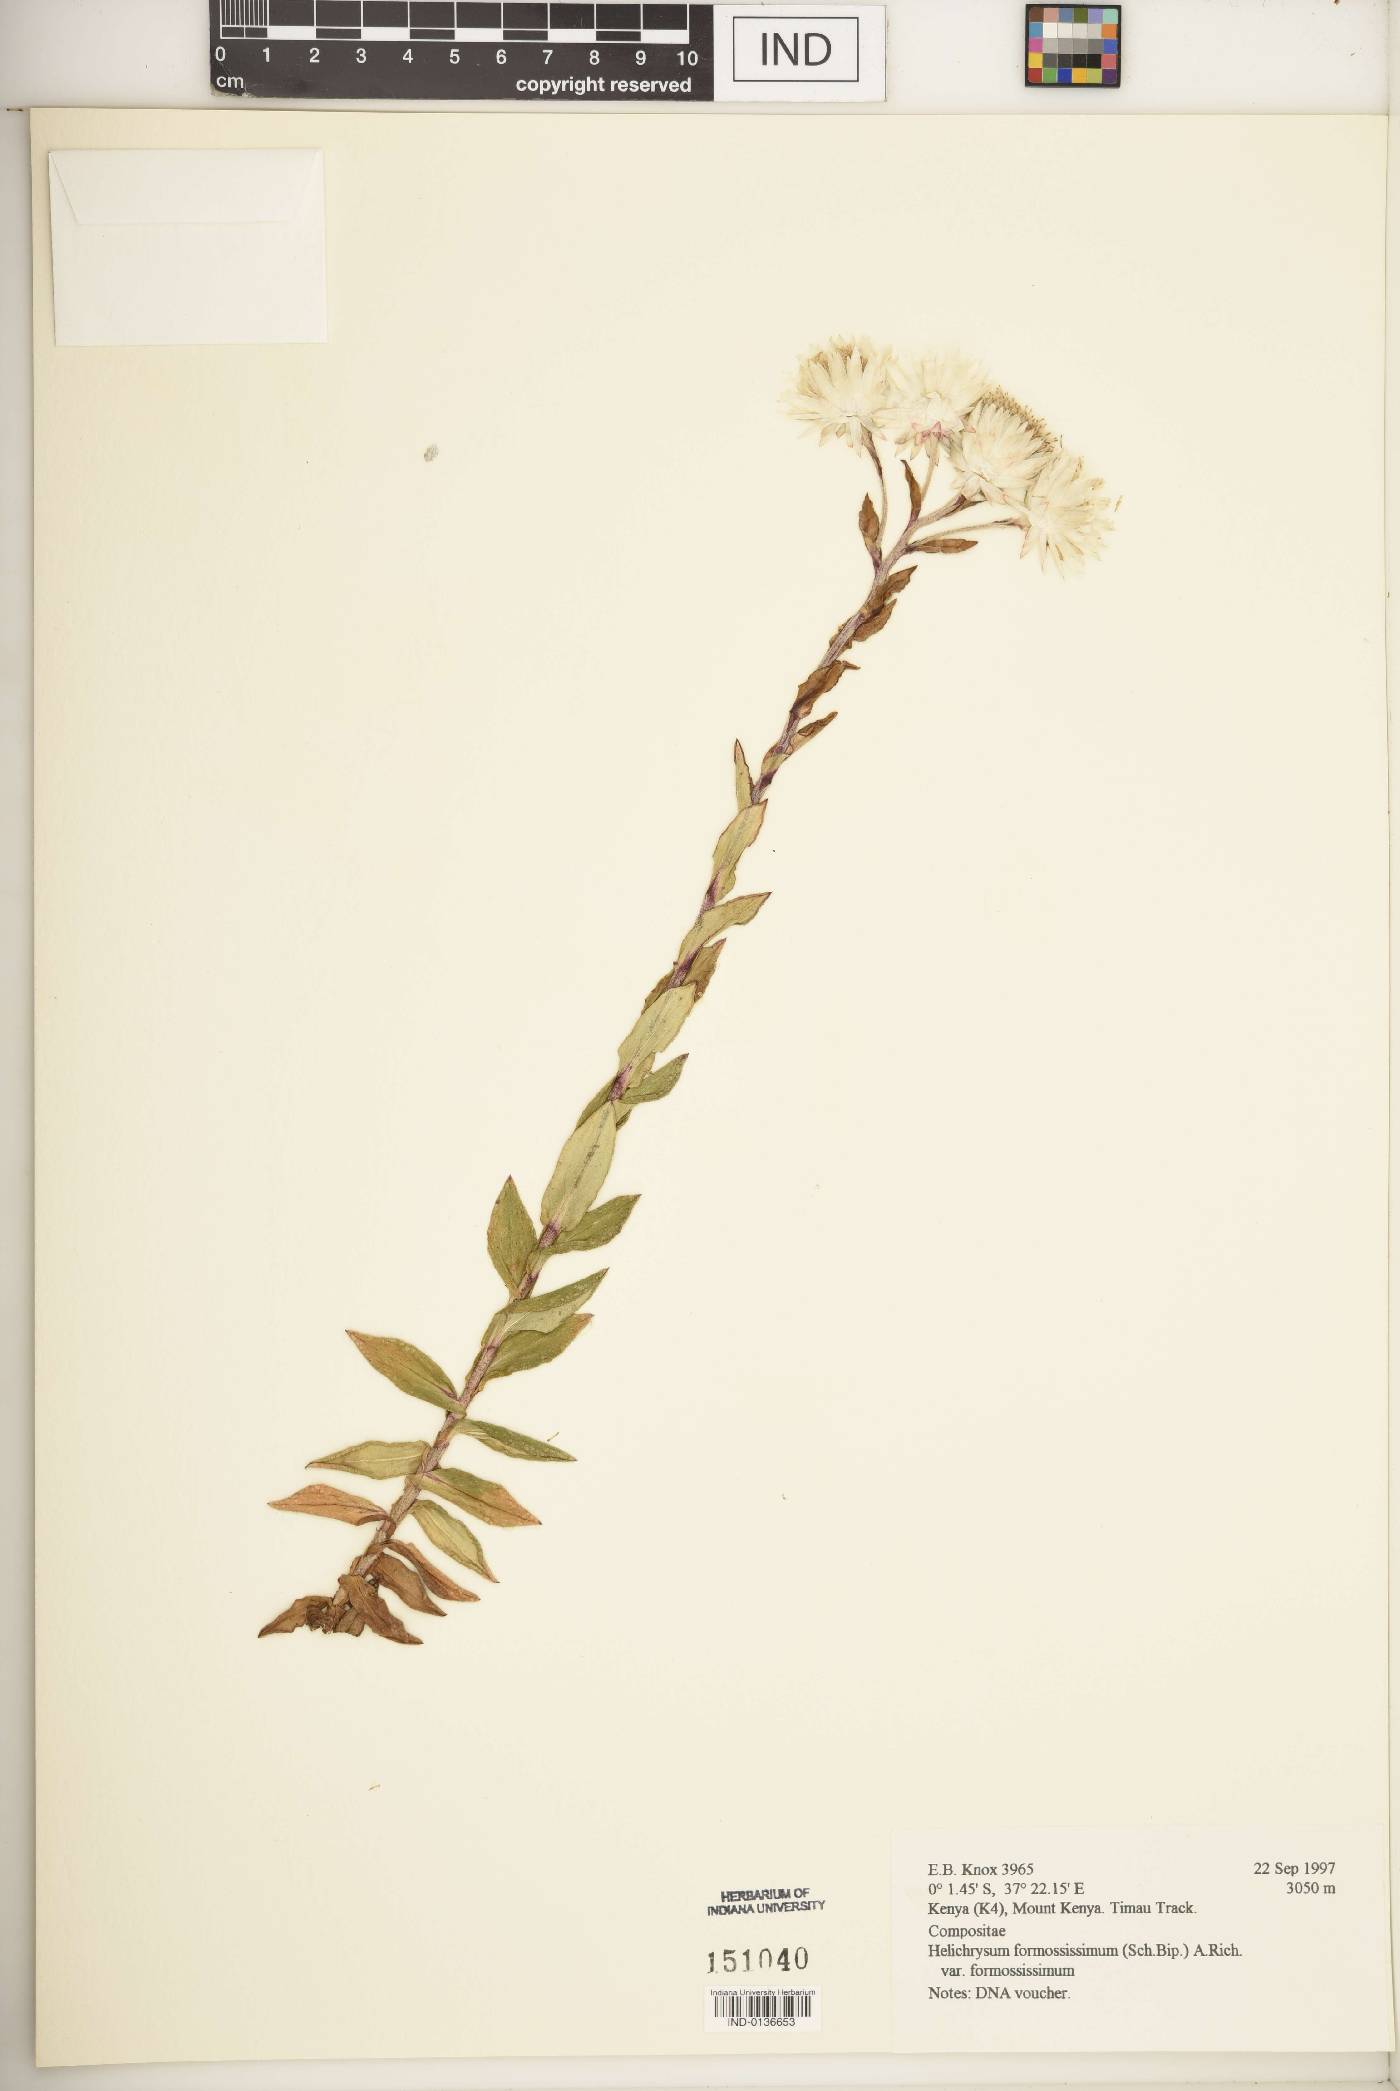 Helichrysum formosissimum image